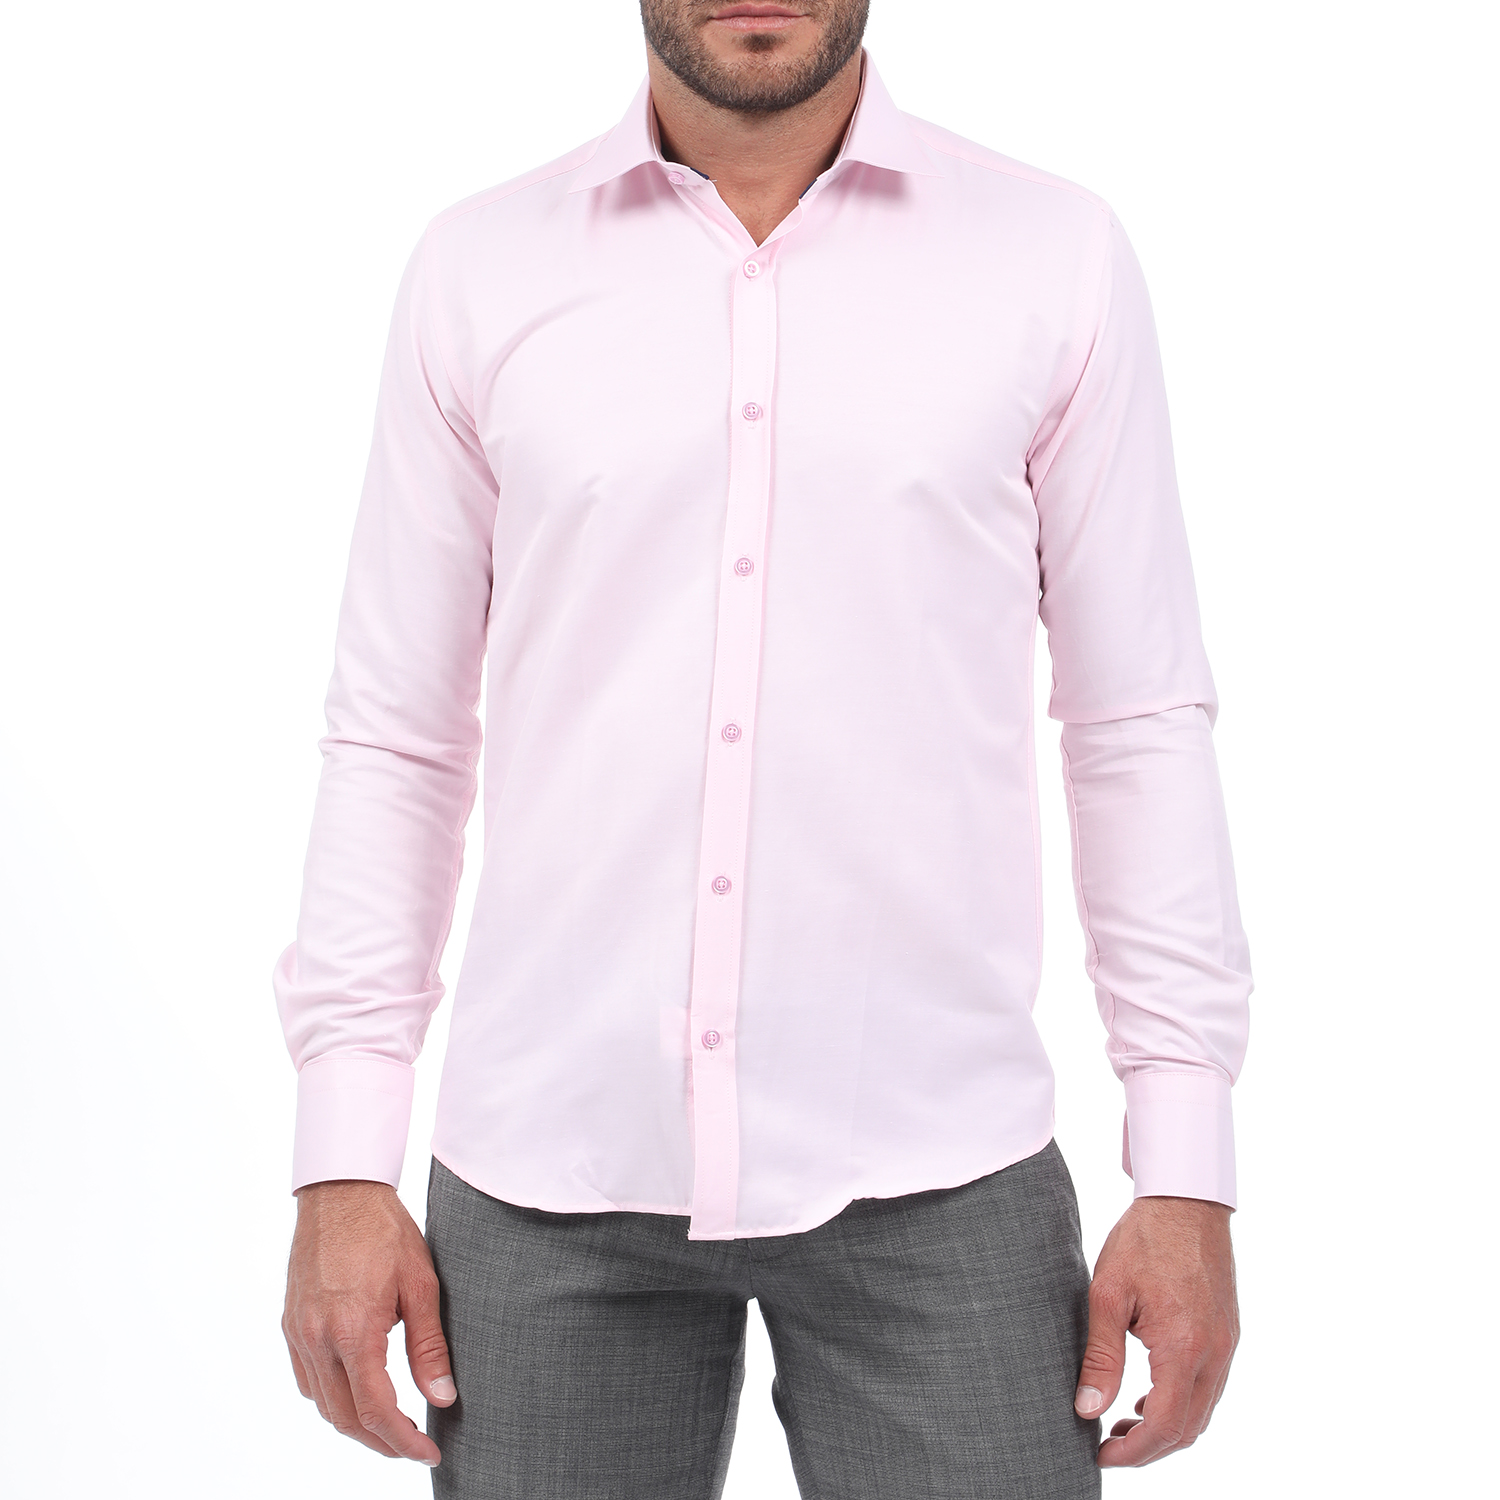 Ανδρικά/Ρούχα/Πουκάμισα/Μακρυμάνικα MARTIN & CO - Ανδρικό πουκάμισο MARTIN & CO SLIM FIT ροζ